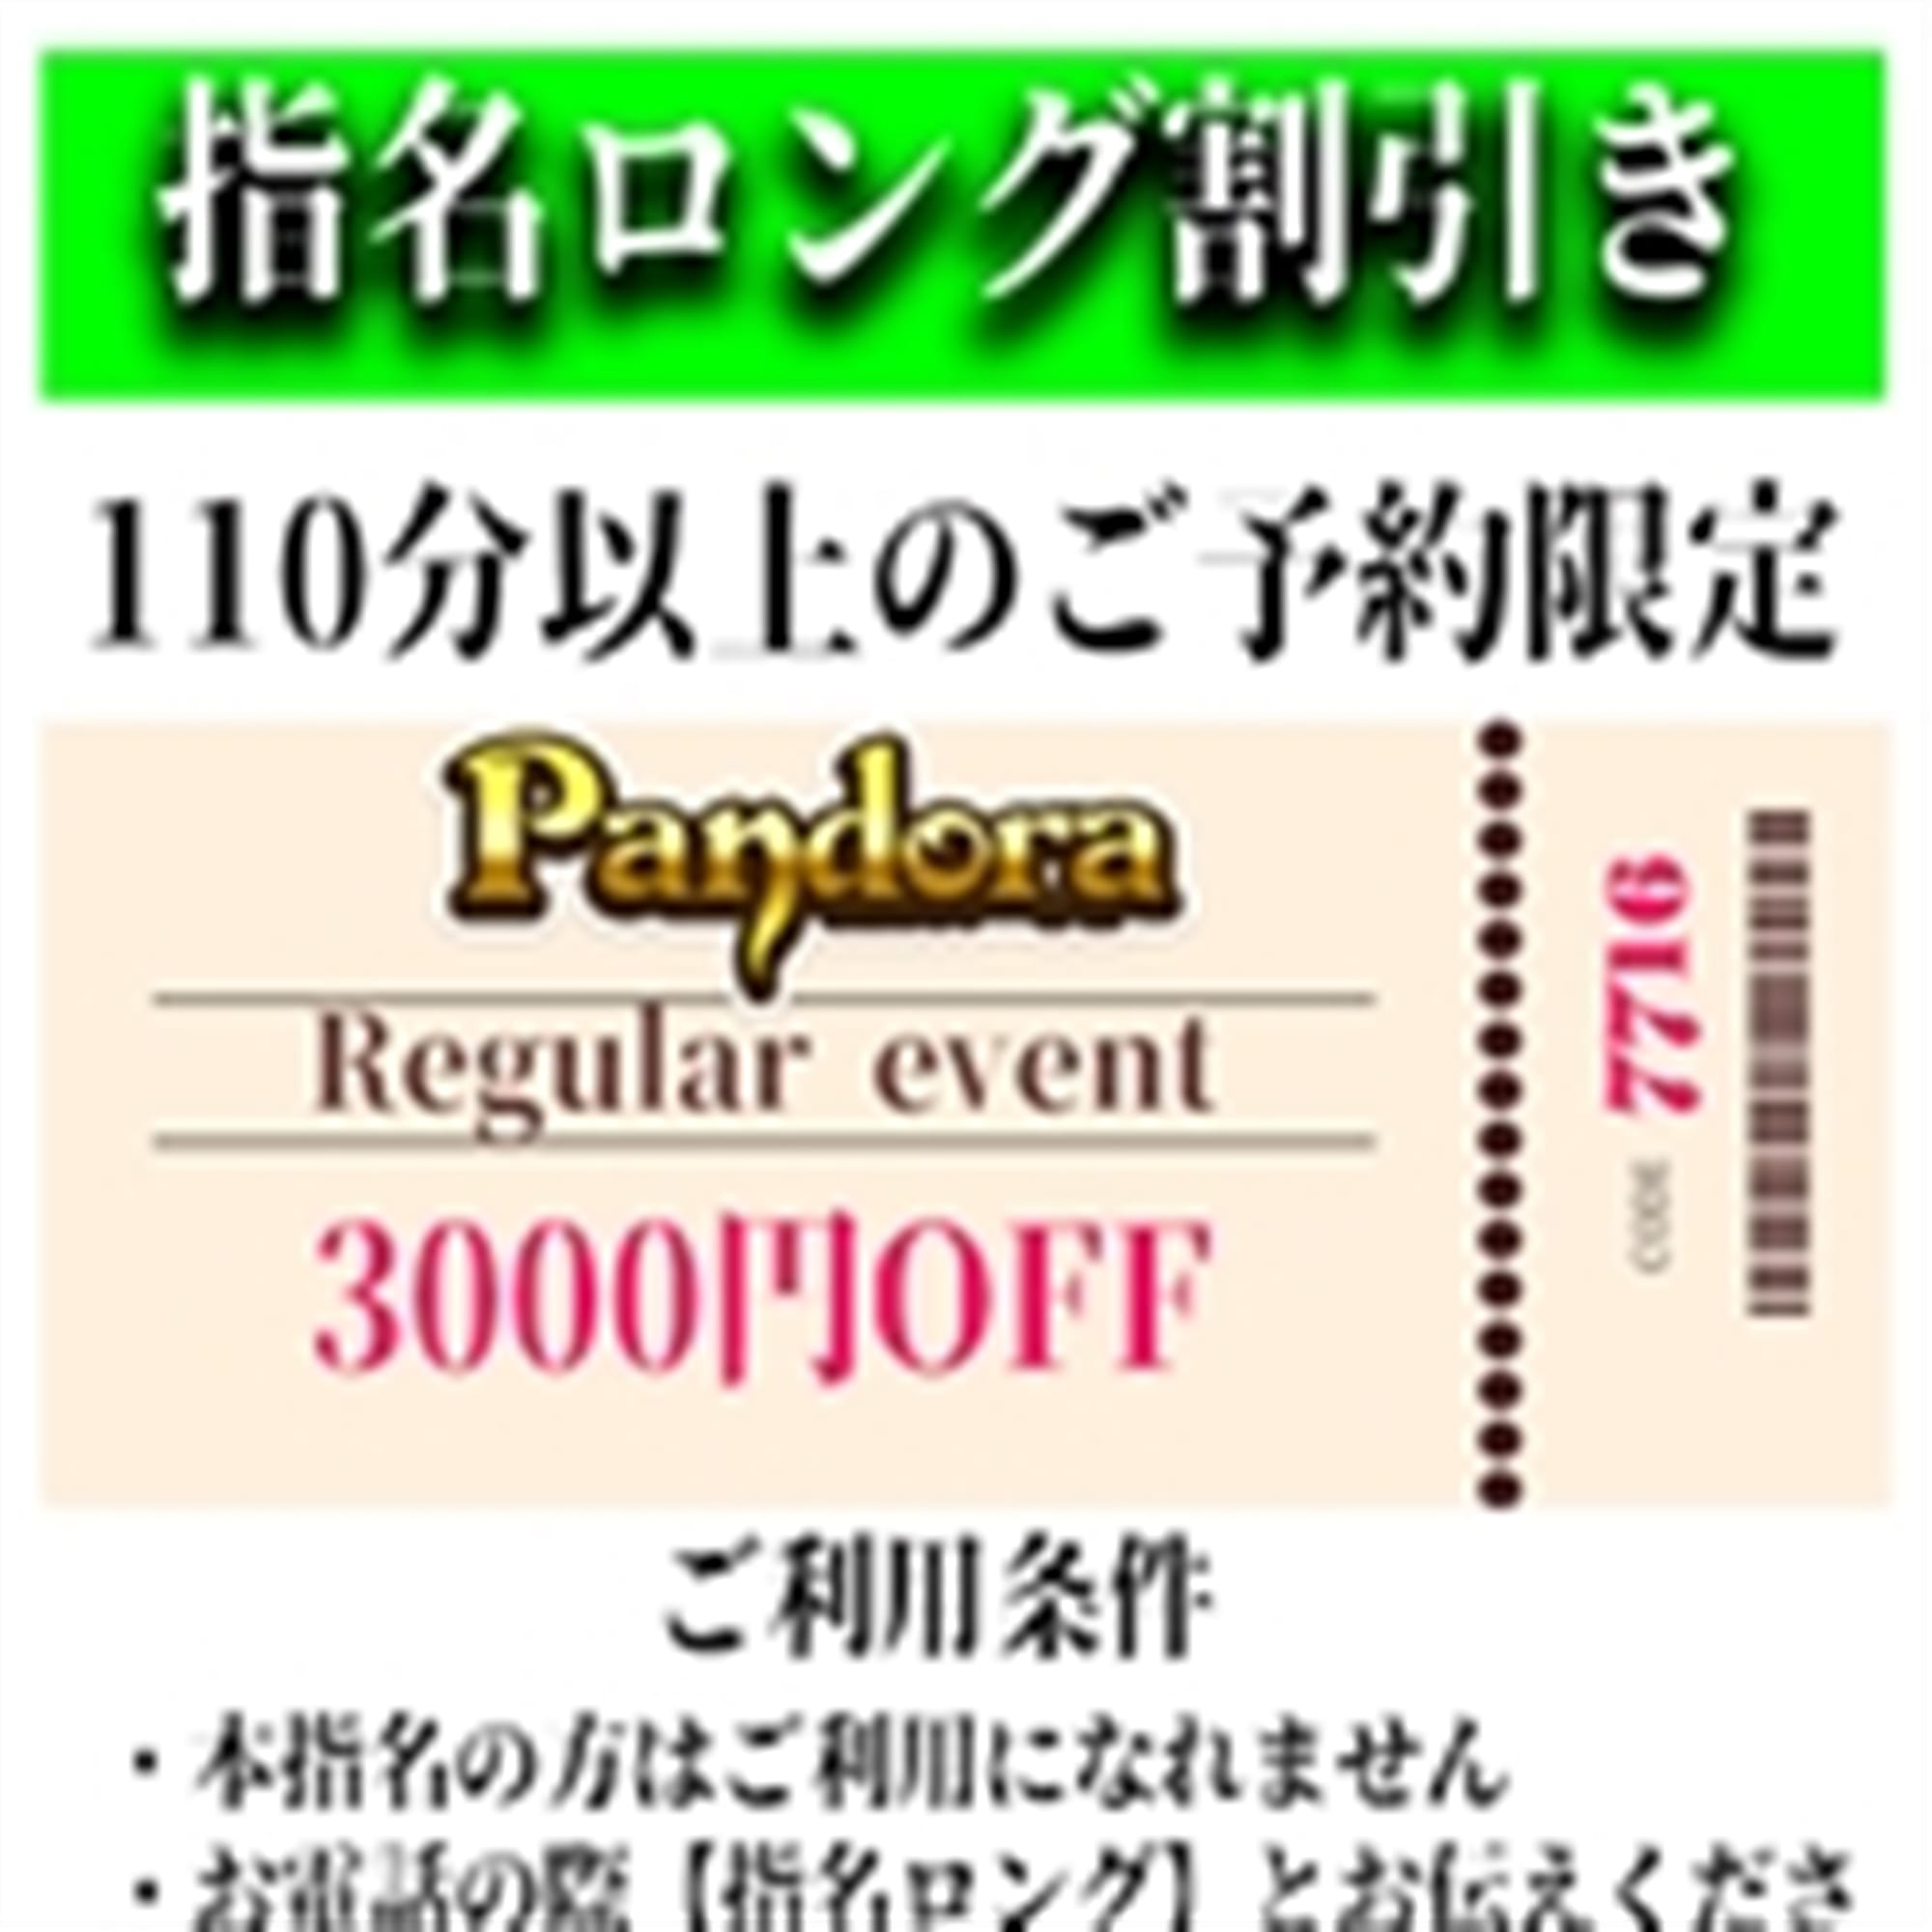 「ご指名のお客様も遊べるロングコース割引」04/25(木) 15:19 | Pandora(パンドラ)新潟のお得なニュース